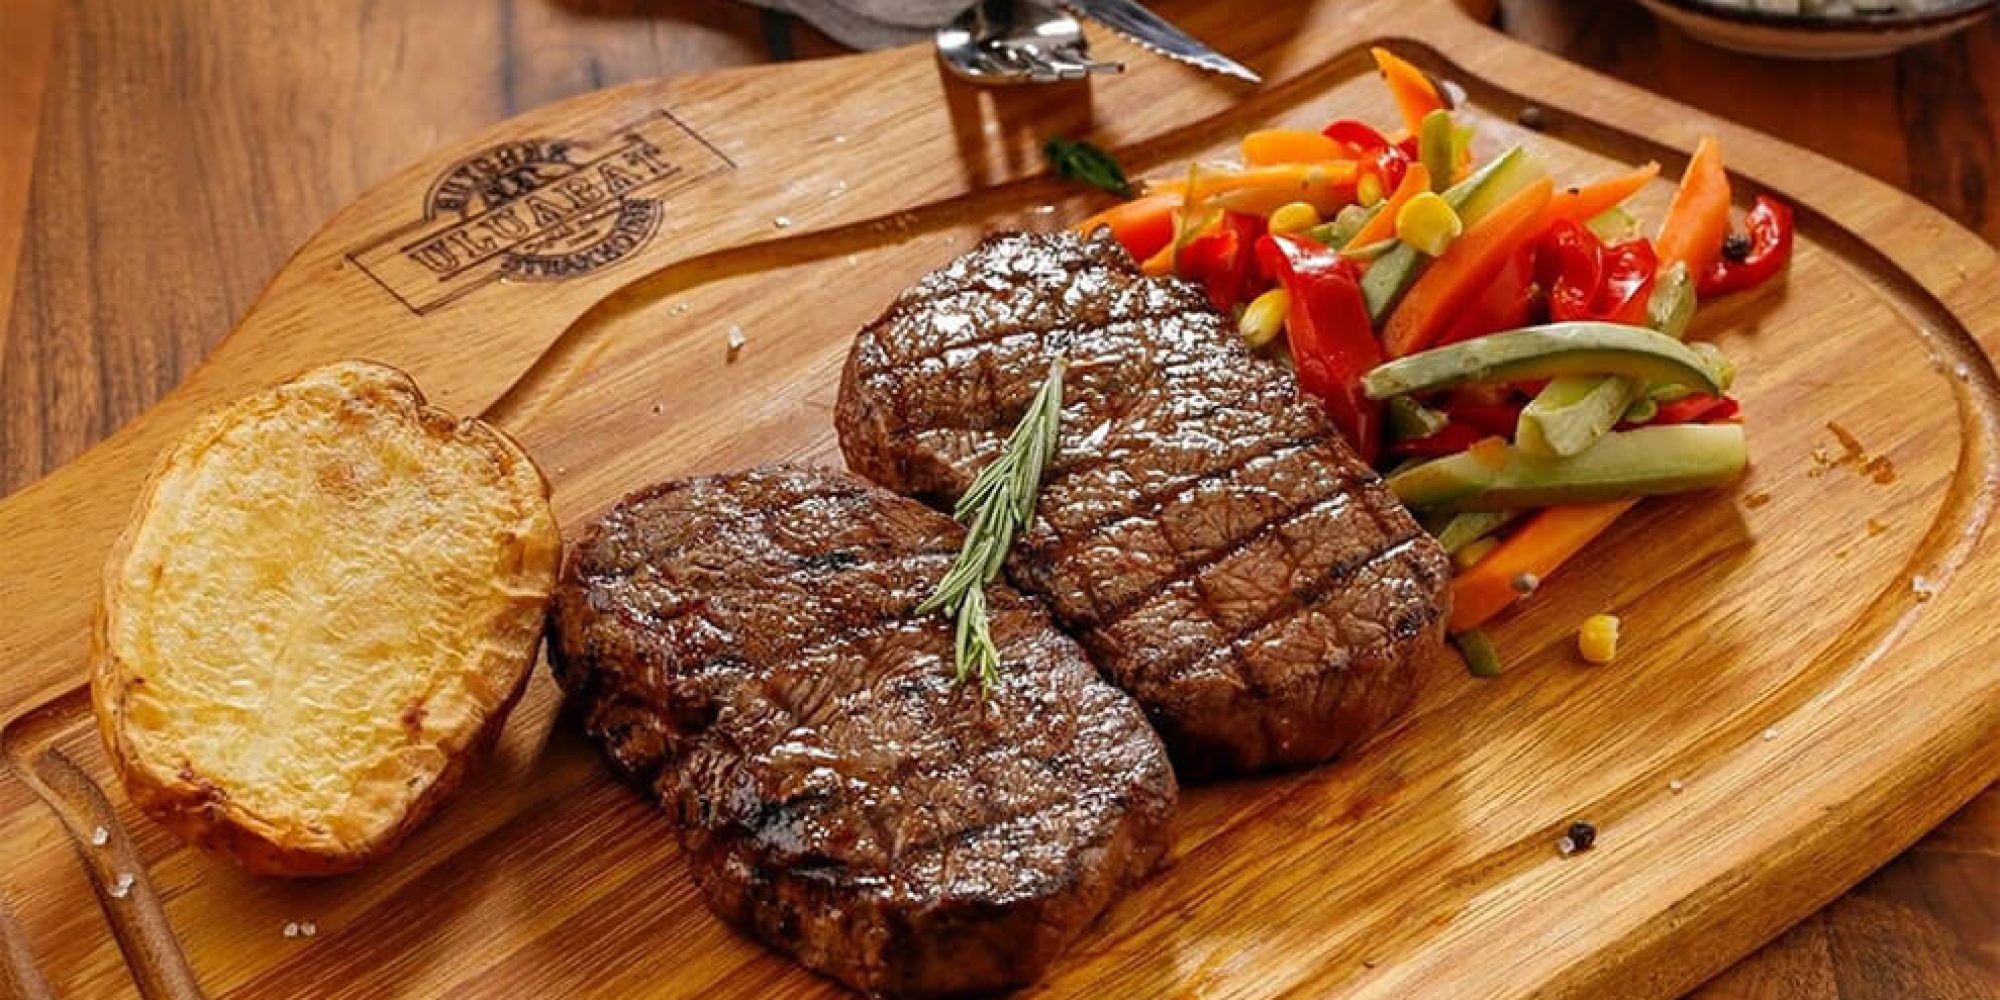 Zwei gegrillte Steaks auf einer Holzplatte angerichtet mit rotem Paprika und Weissbrot.